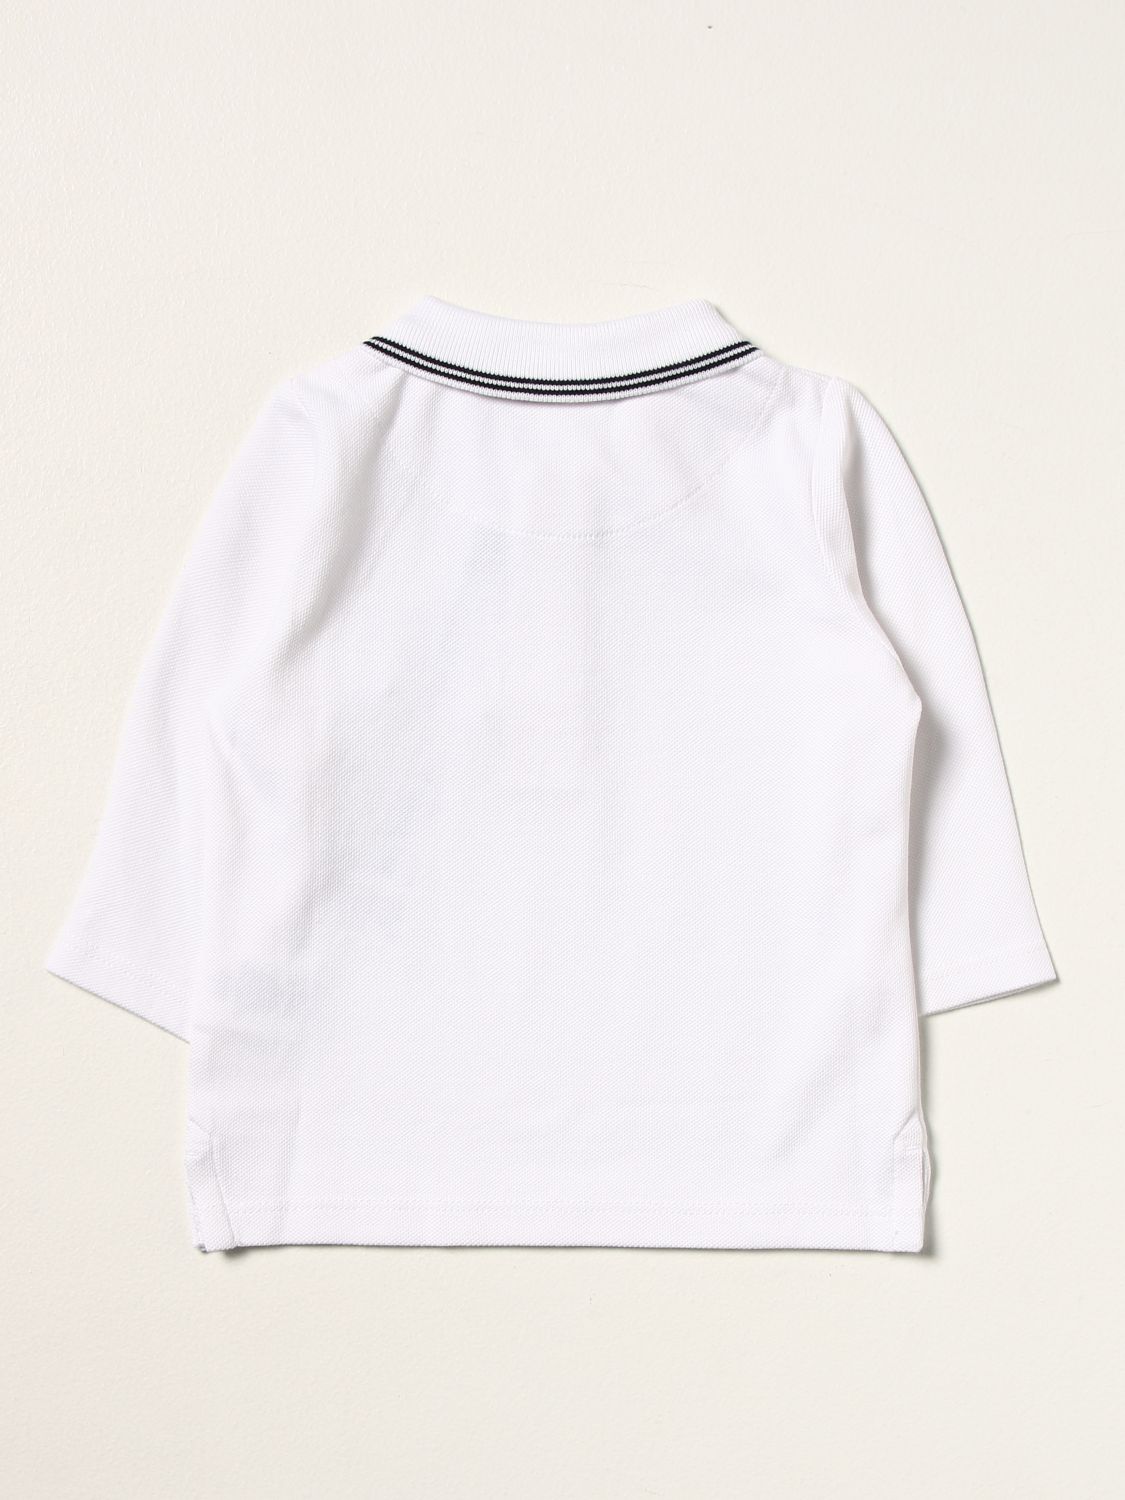 T-shirt Hugo Boss: Hugo Boss basic polo shirt in cotton white 2